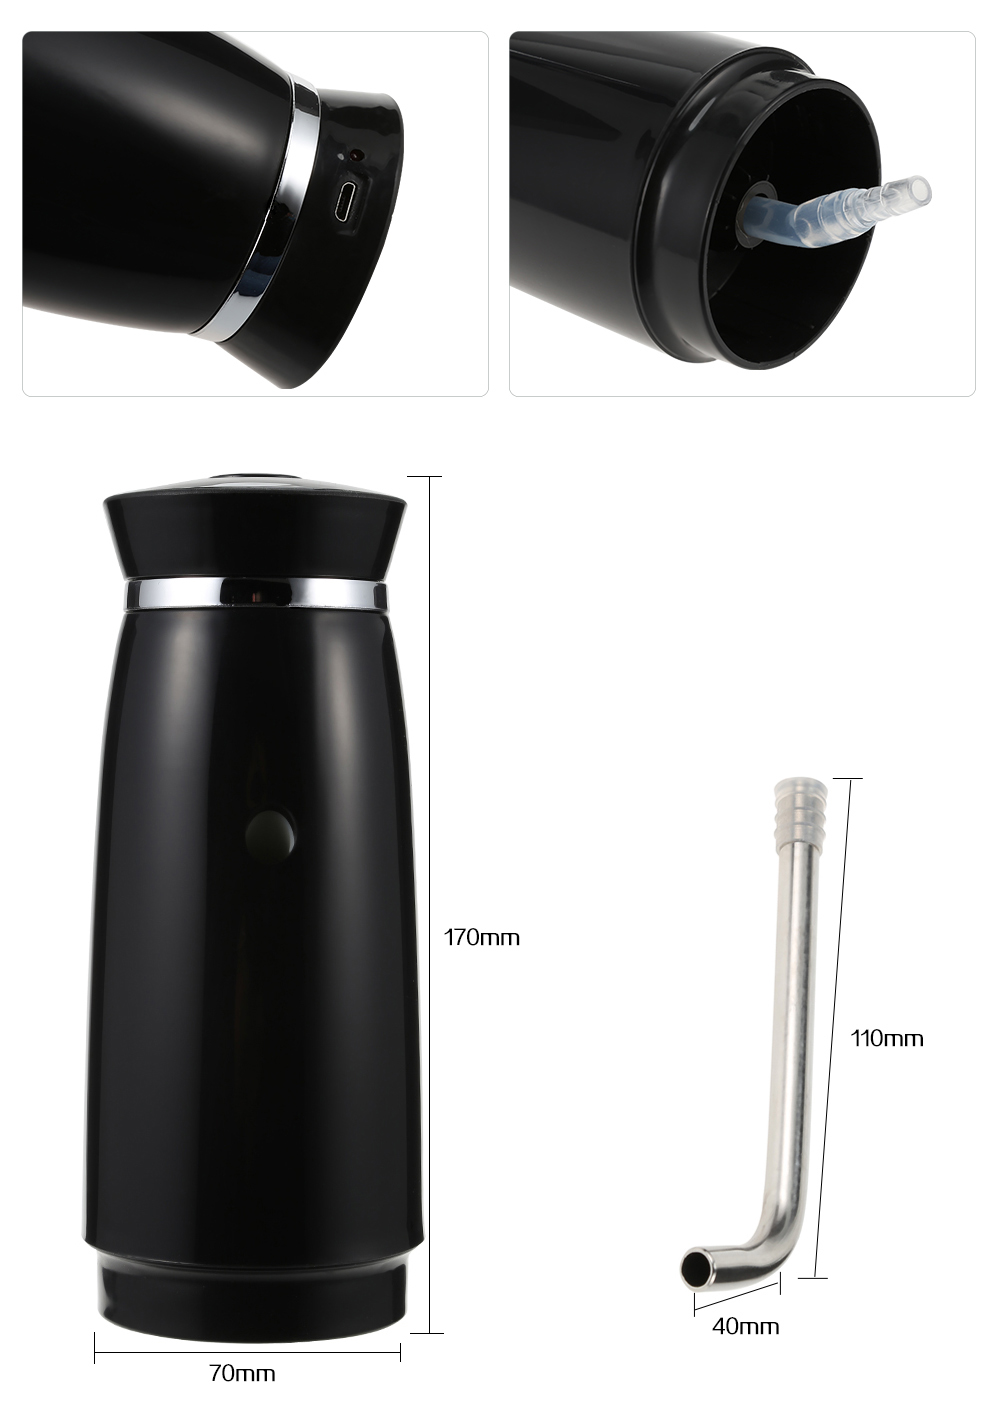 Jetmaker Wireless Universal Drinking Water Bottle Pump